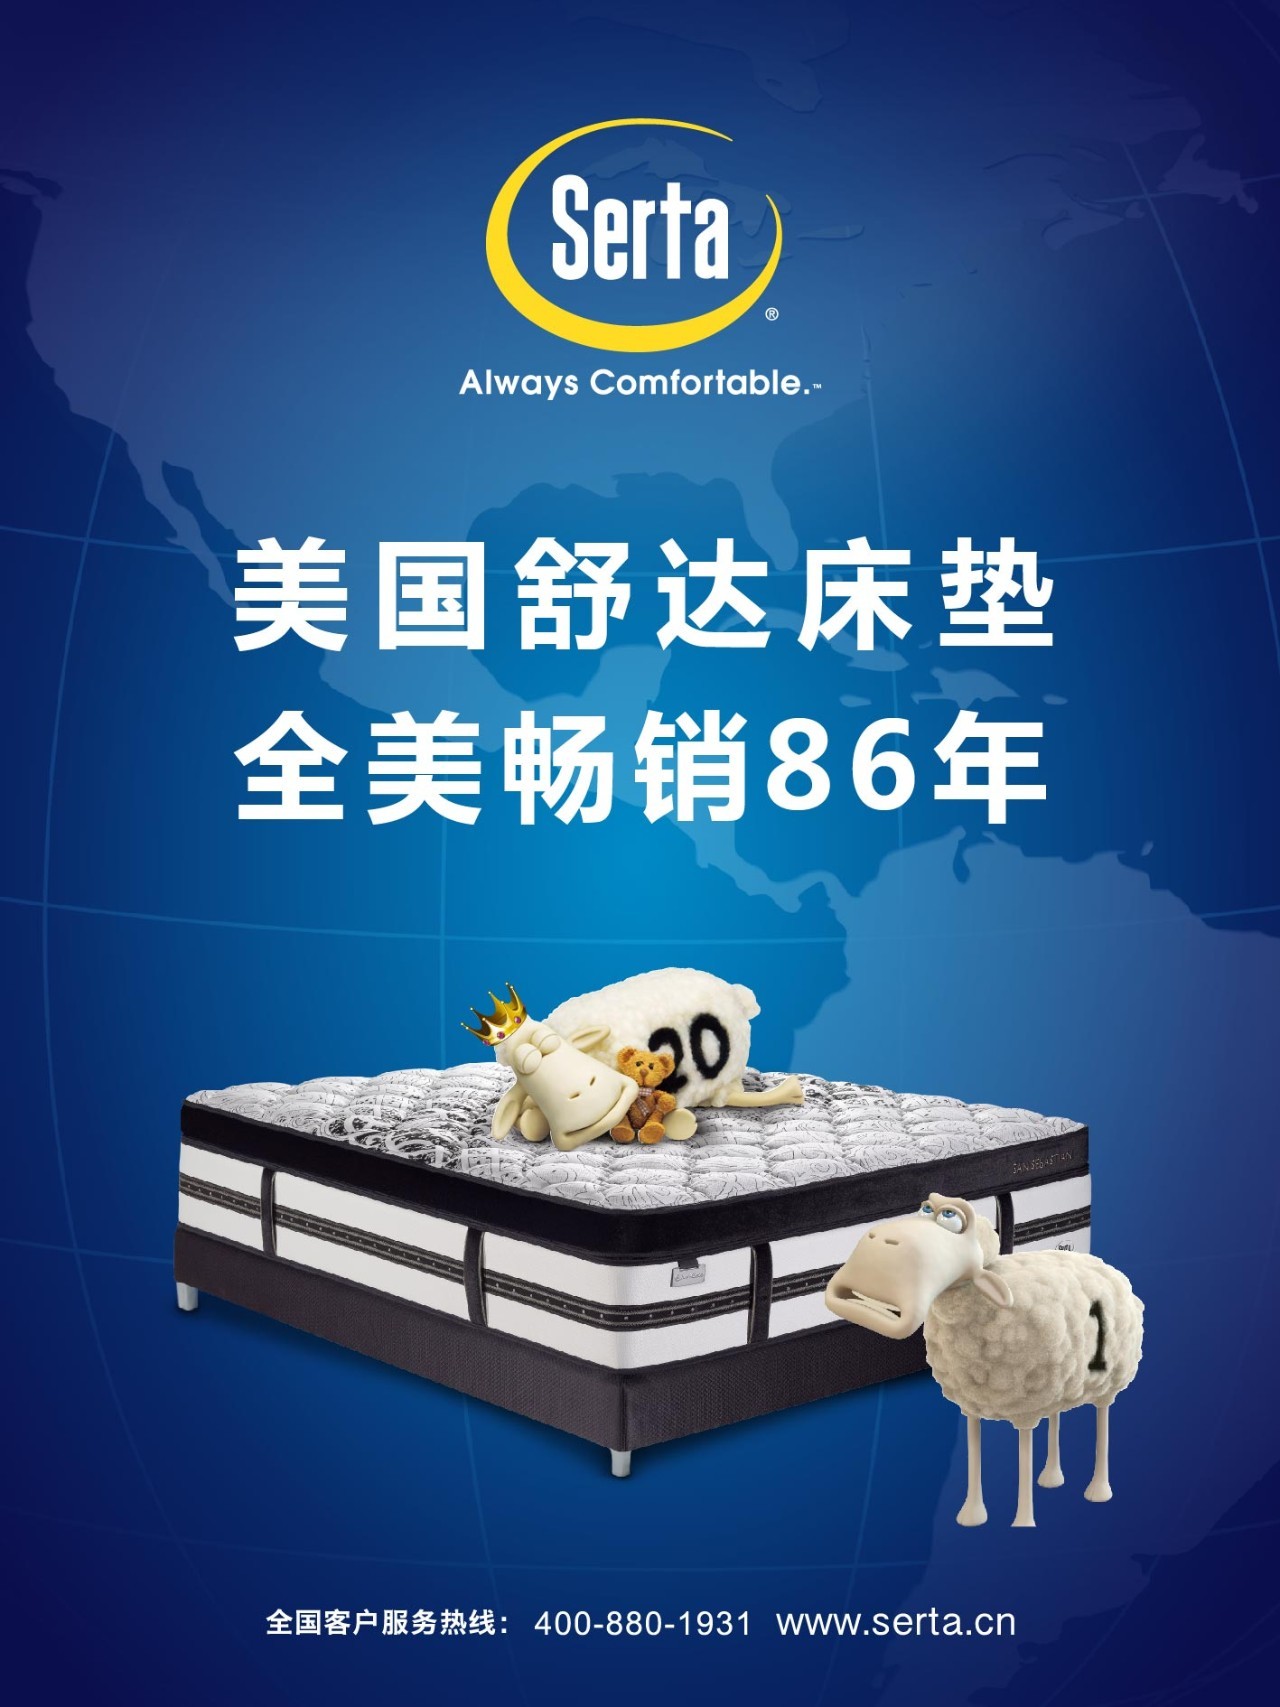 从几千元到几万元甚至几十万元,舒达床垫满足了中国高端床垫的各个